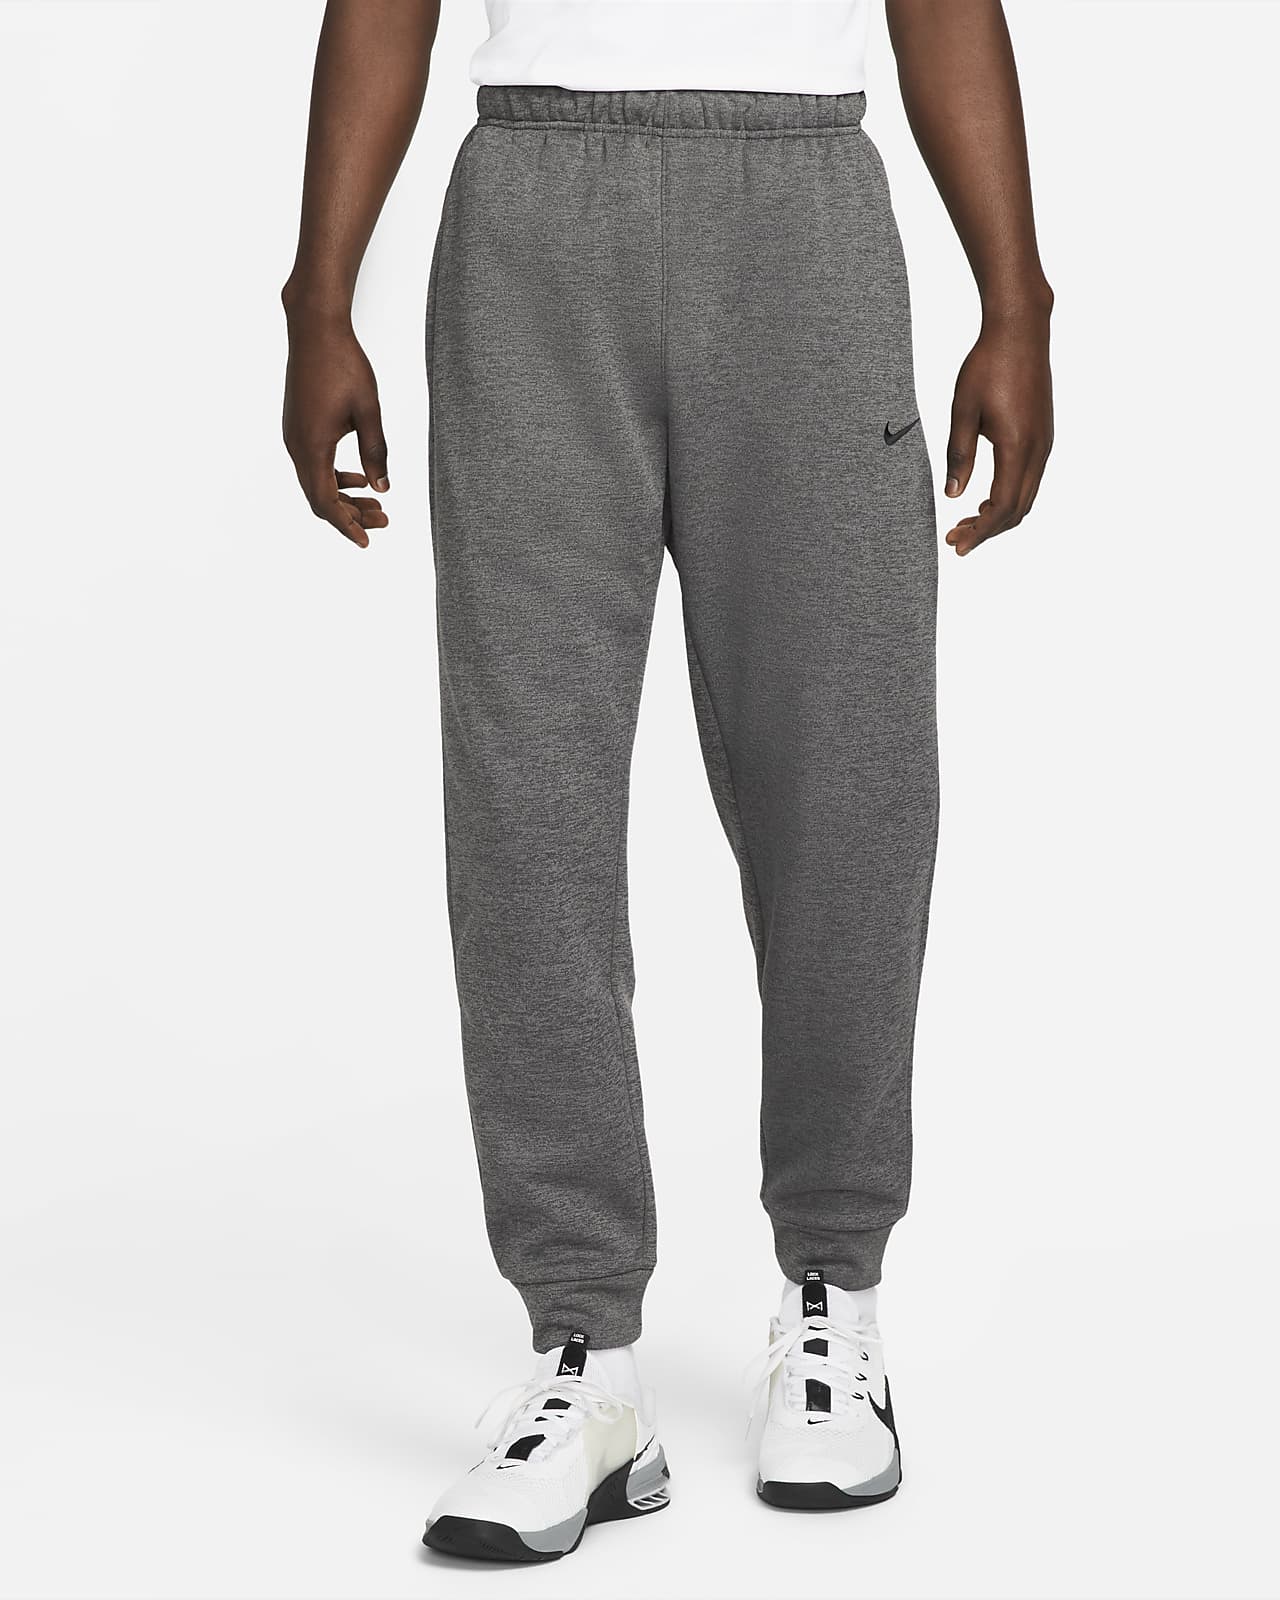 nwt~Nike Golf TOUR PERFORMANCE Dri-Fit MODERN TECH Pants Trousers~Men size  28/30 | eBay